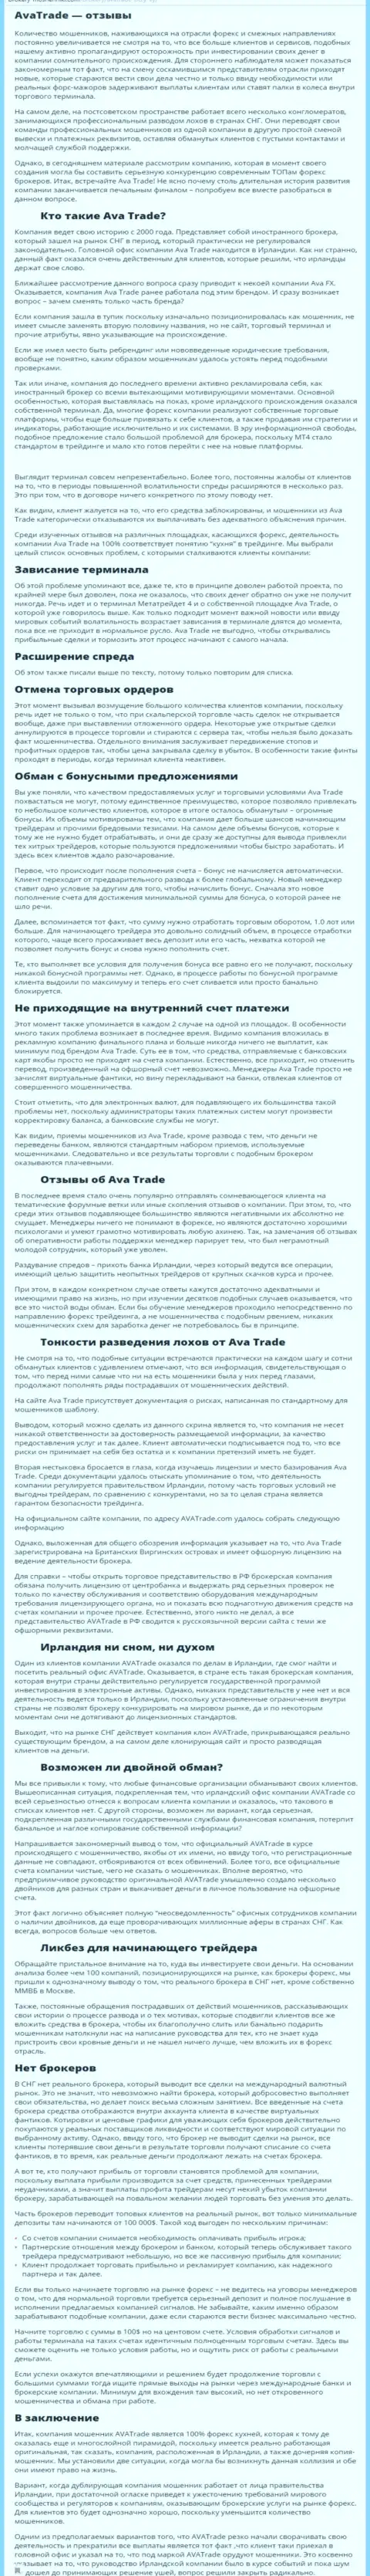 Обзорная публикация со стопудовыми доказательствами противозаконных манипуляций Ava Trade